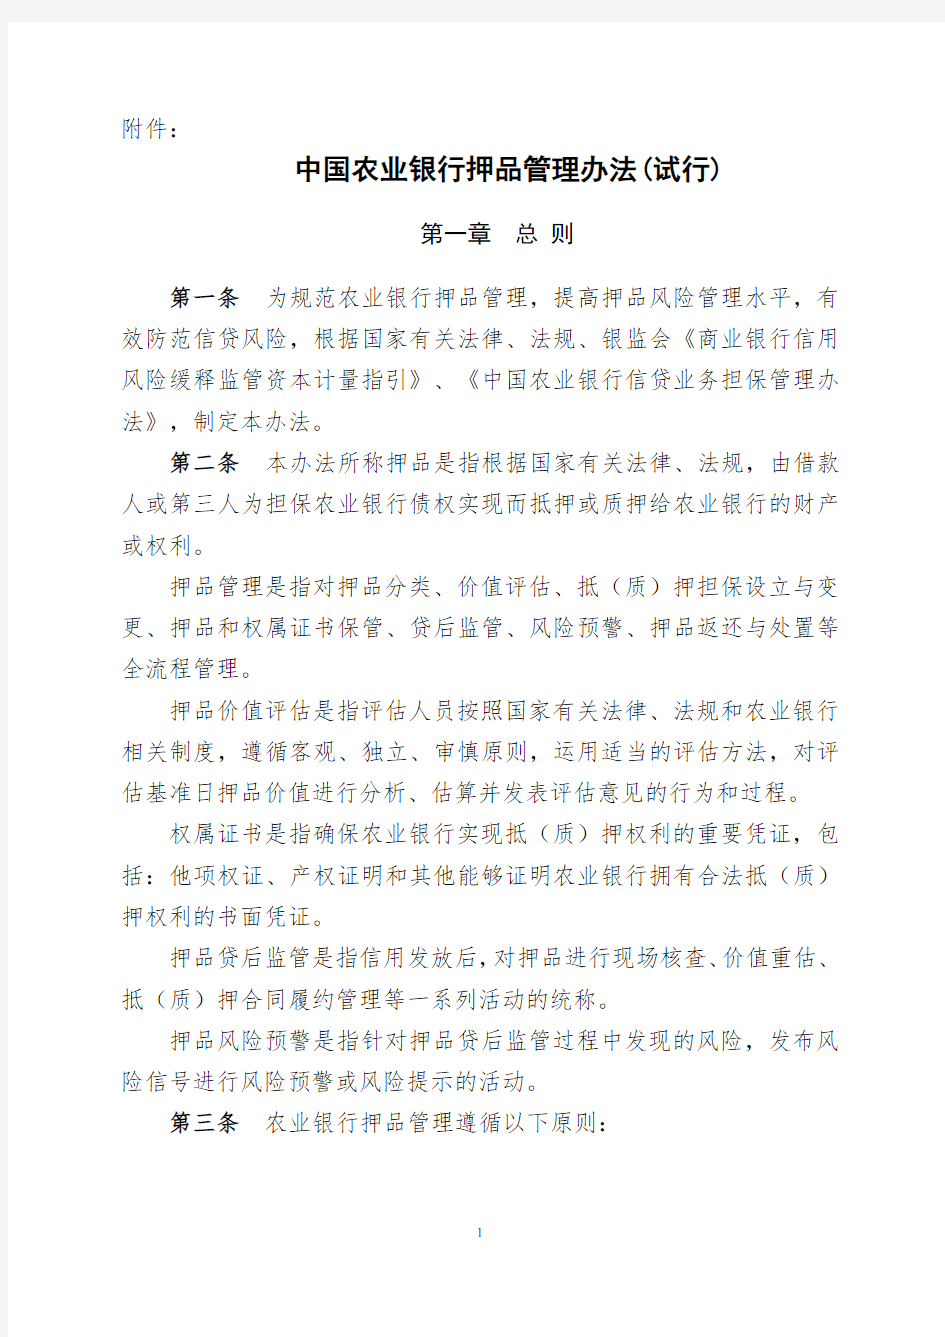 中国农业银行押品管理办法(试行)